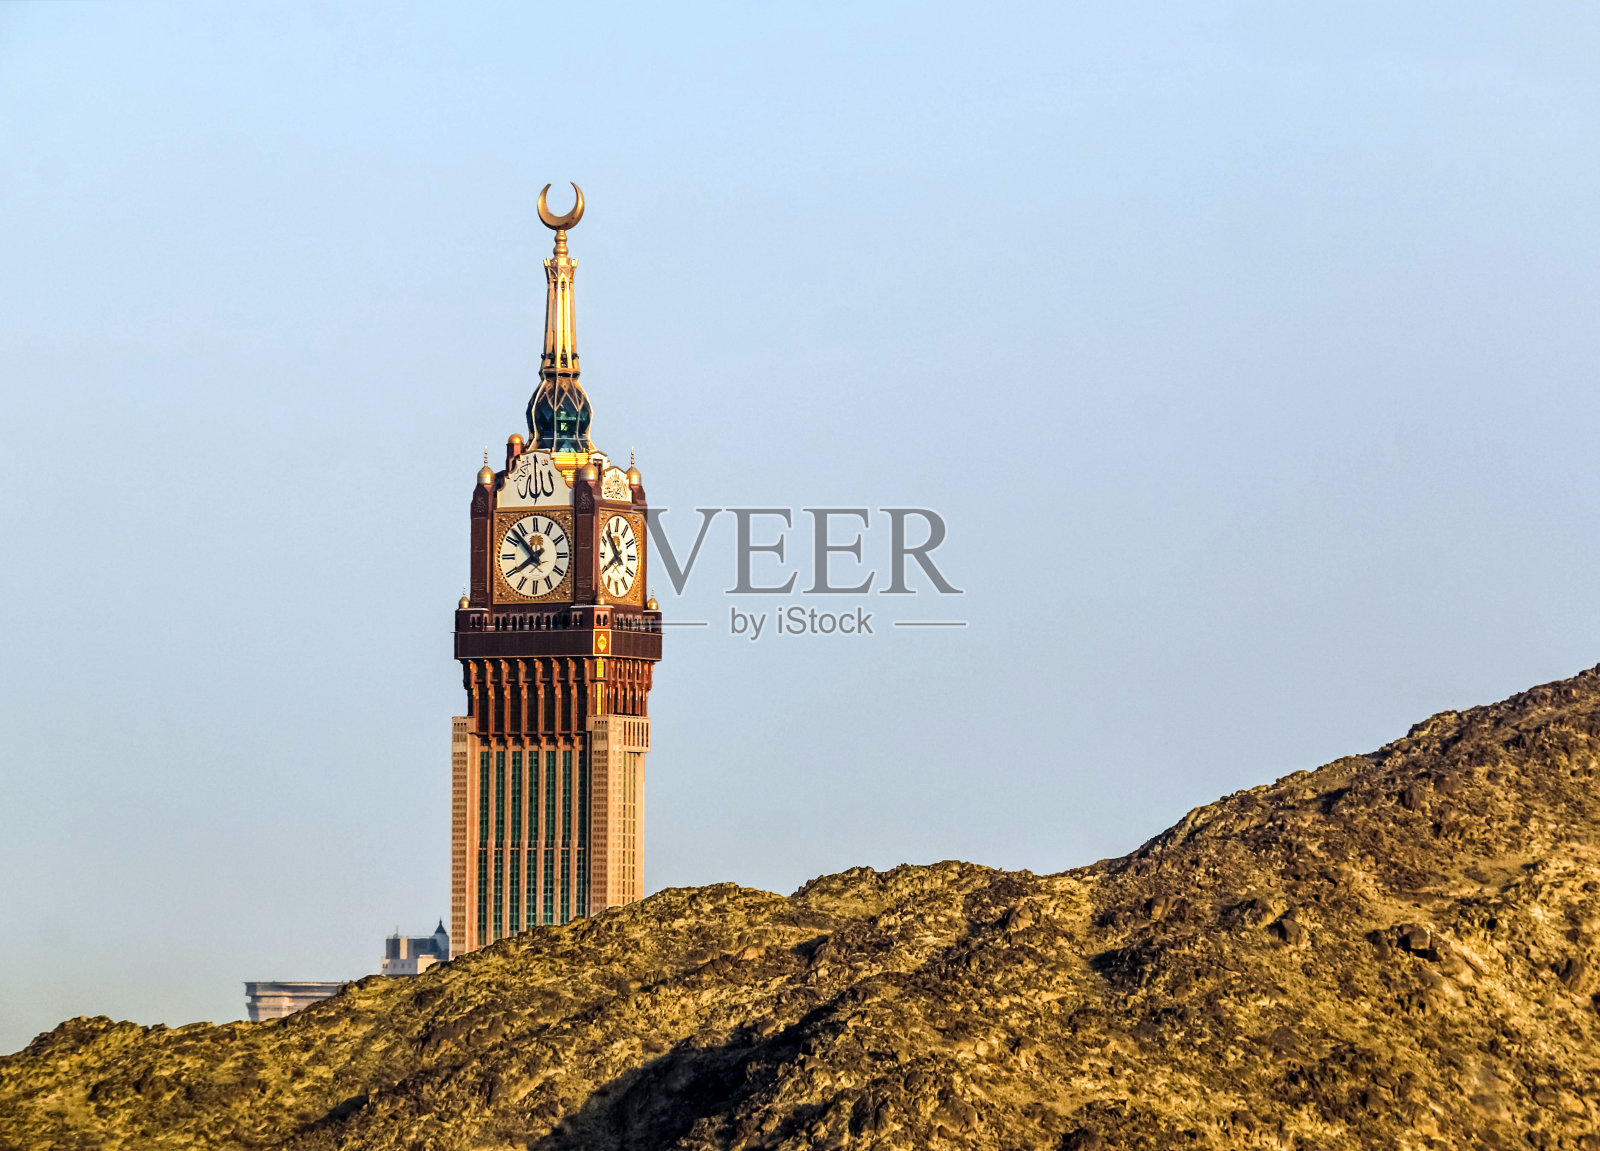 沙特阿拉伯麦加圣城麦加钟楼照片摄影图片